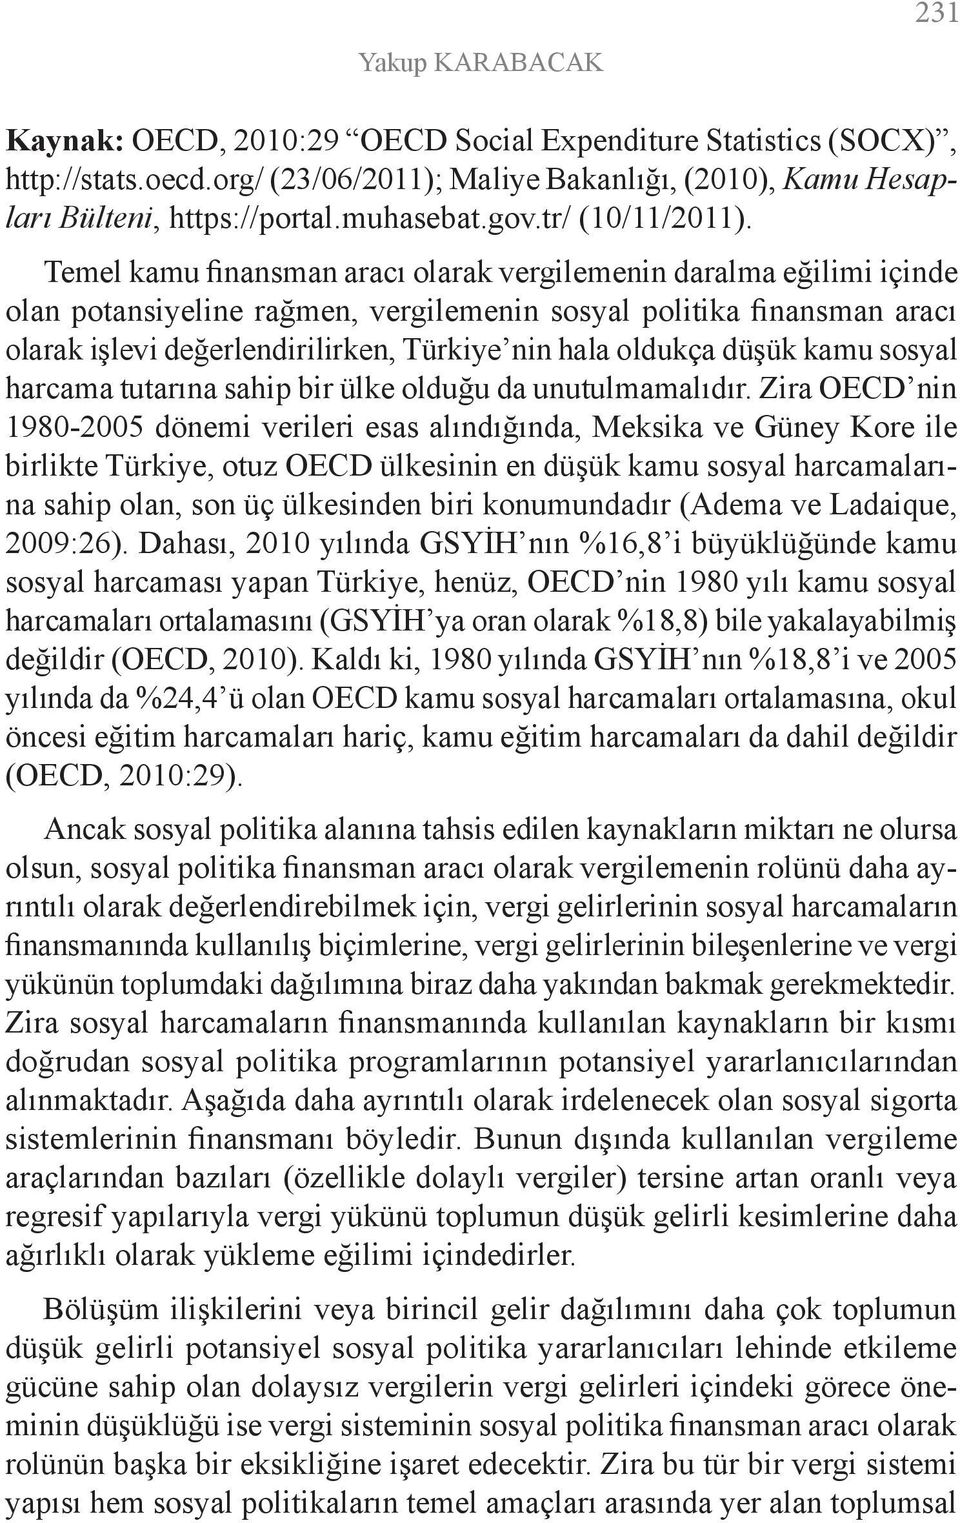 Temel kamu finansman aracı olarak vergilemenin daralma eğilimi içinde olan potansiyeline rağmen, vergilemenin sosyal politika finansman aracı olarak işlevi değerlendirilirken, Türkiye nin hala